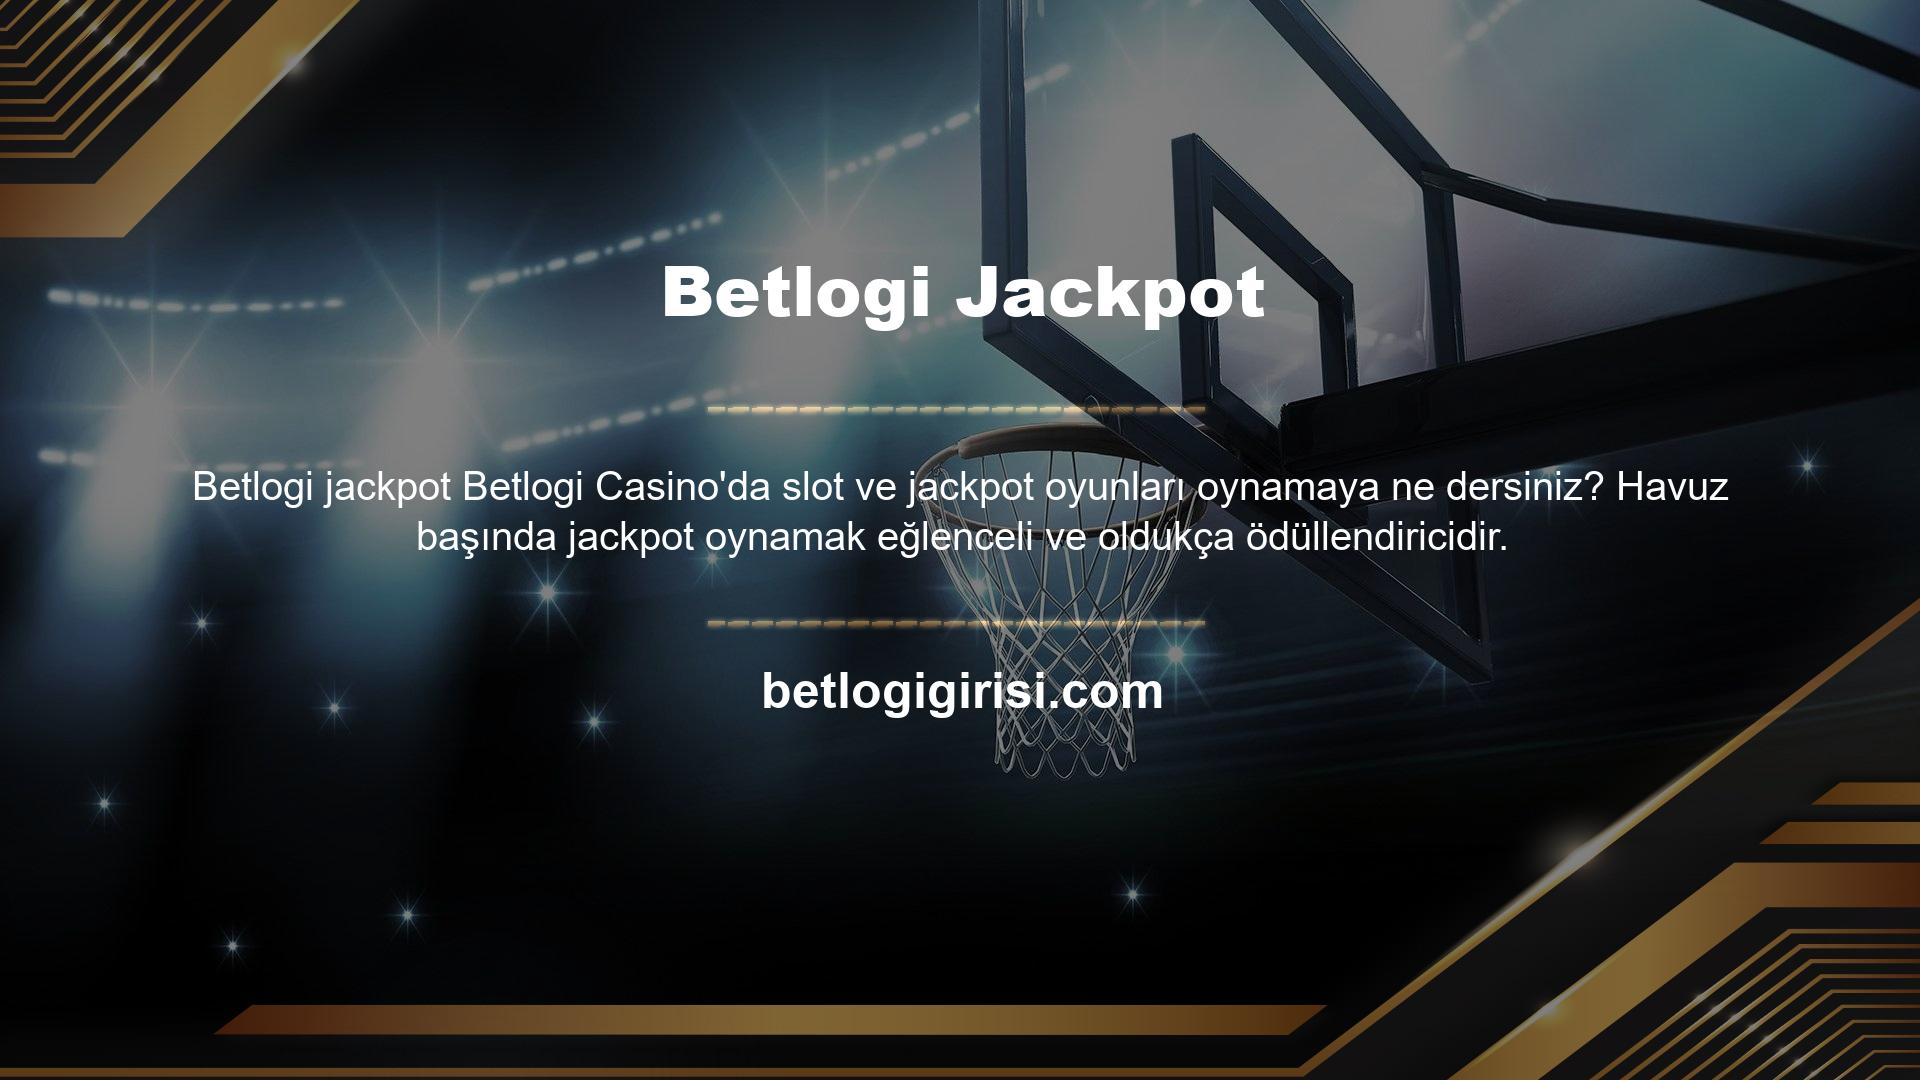 Betlogi Casino bunun farkındadır ve slot makinelerine ve jackpotlara yeni ve modern bir alternatif sunmaktadır